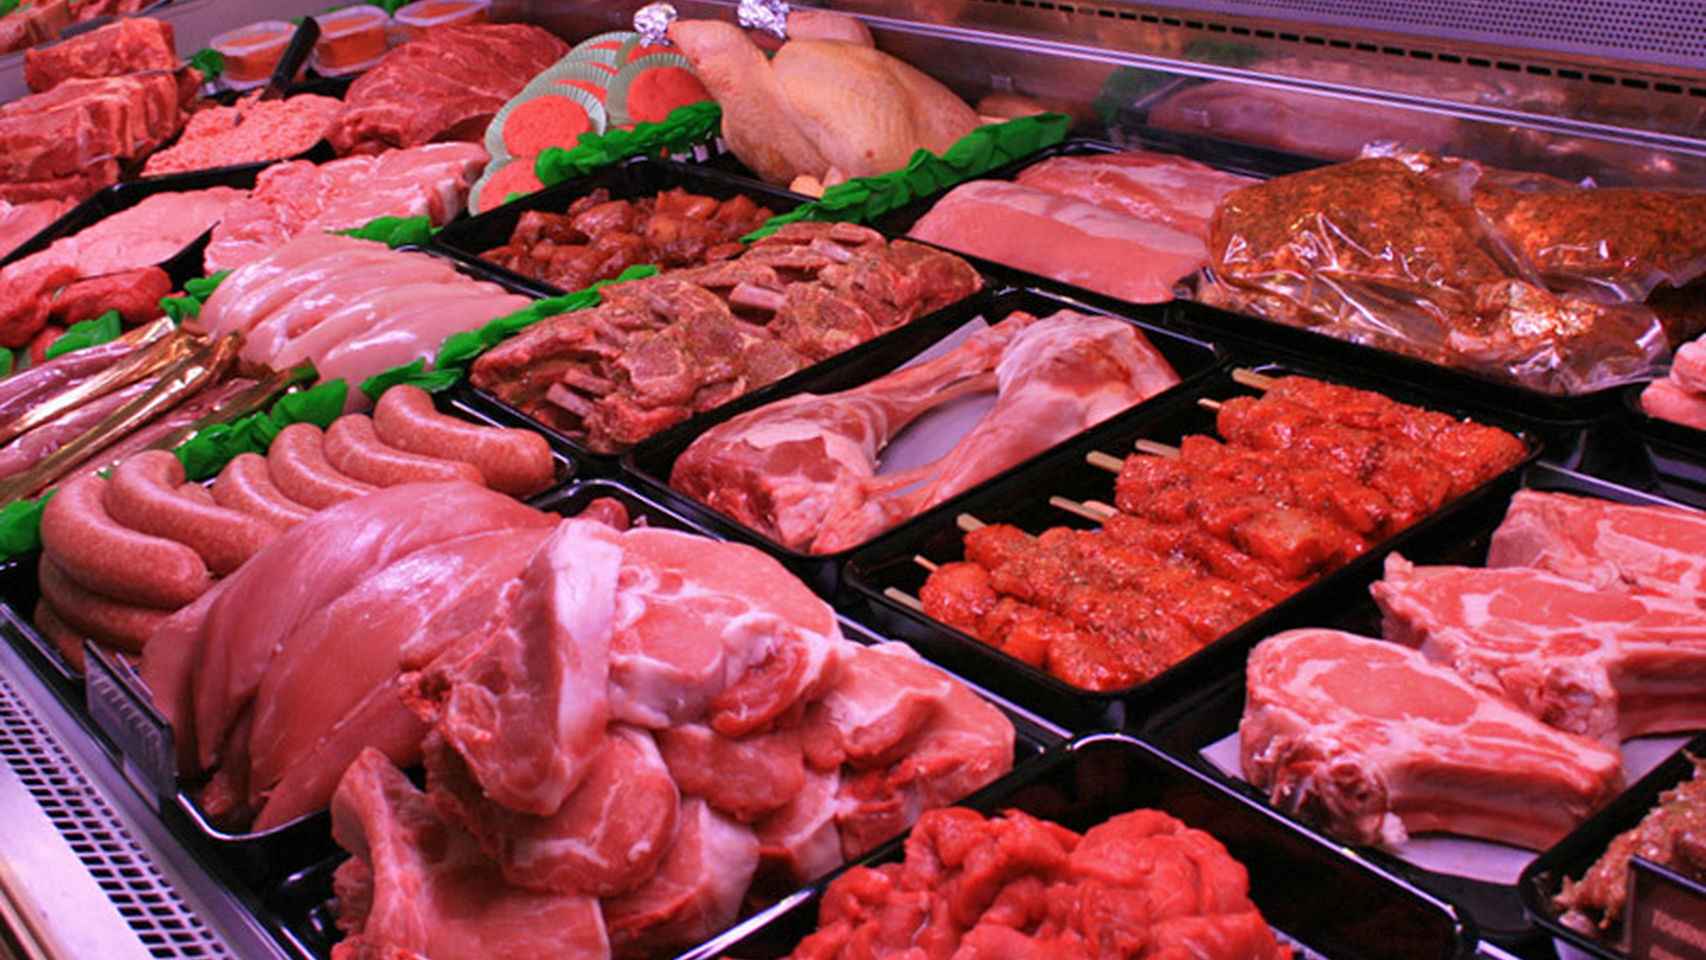 El muestrario de carnes de una carnicería.